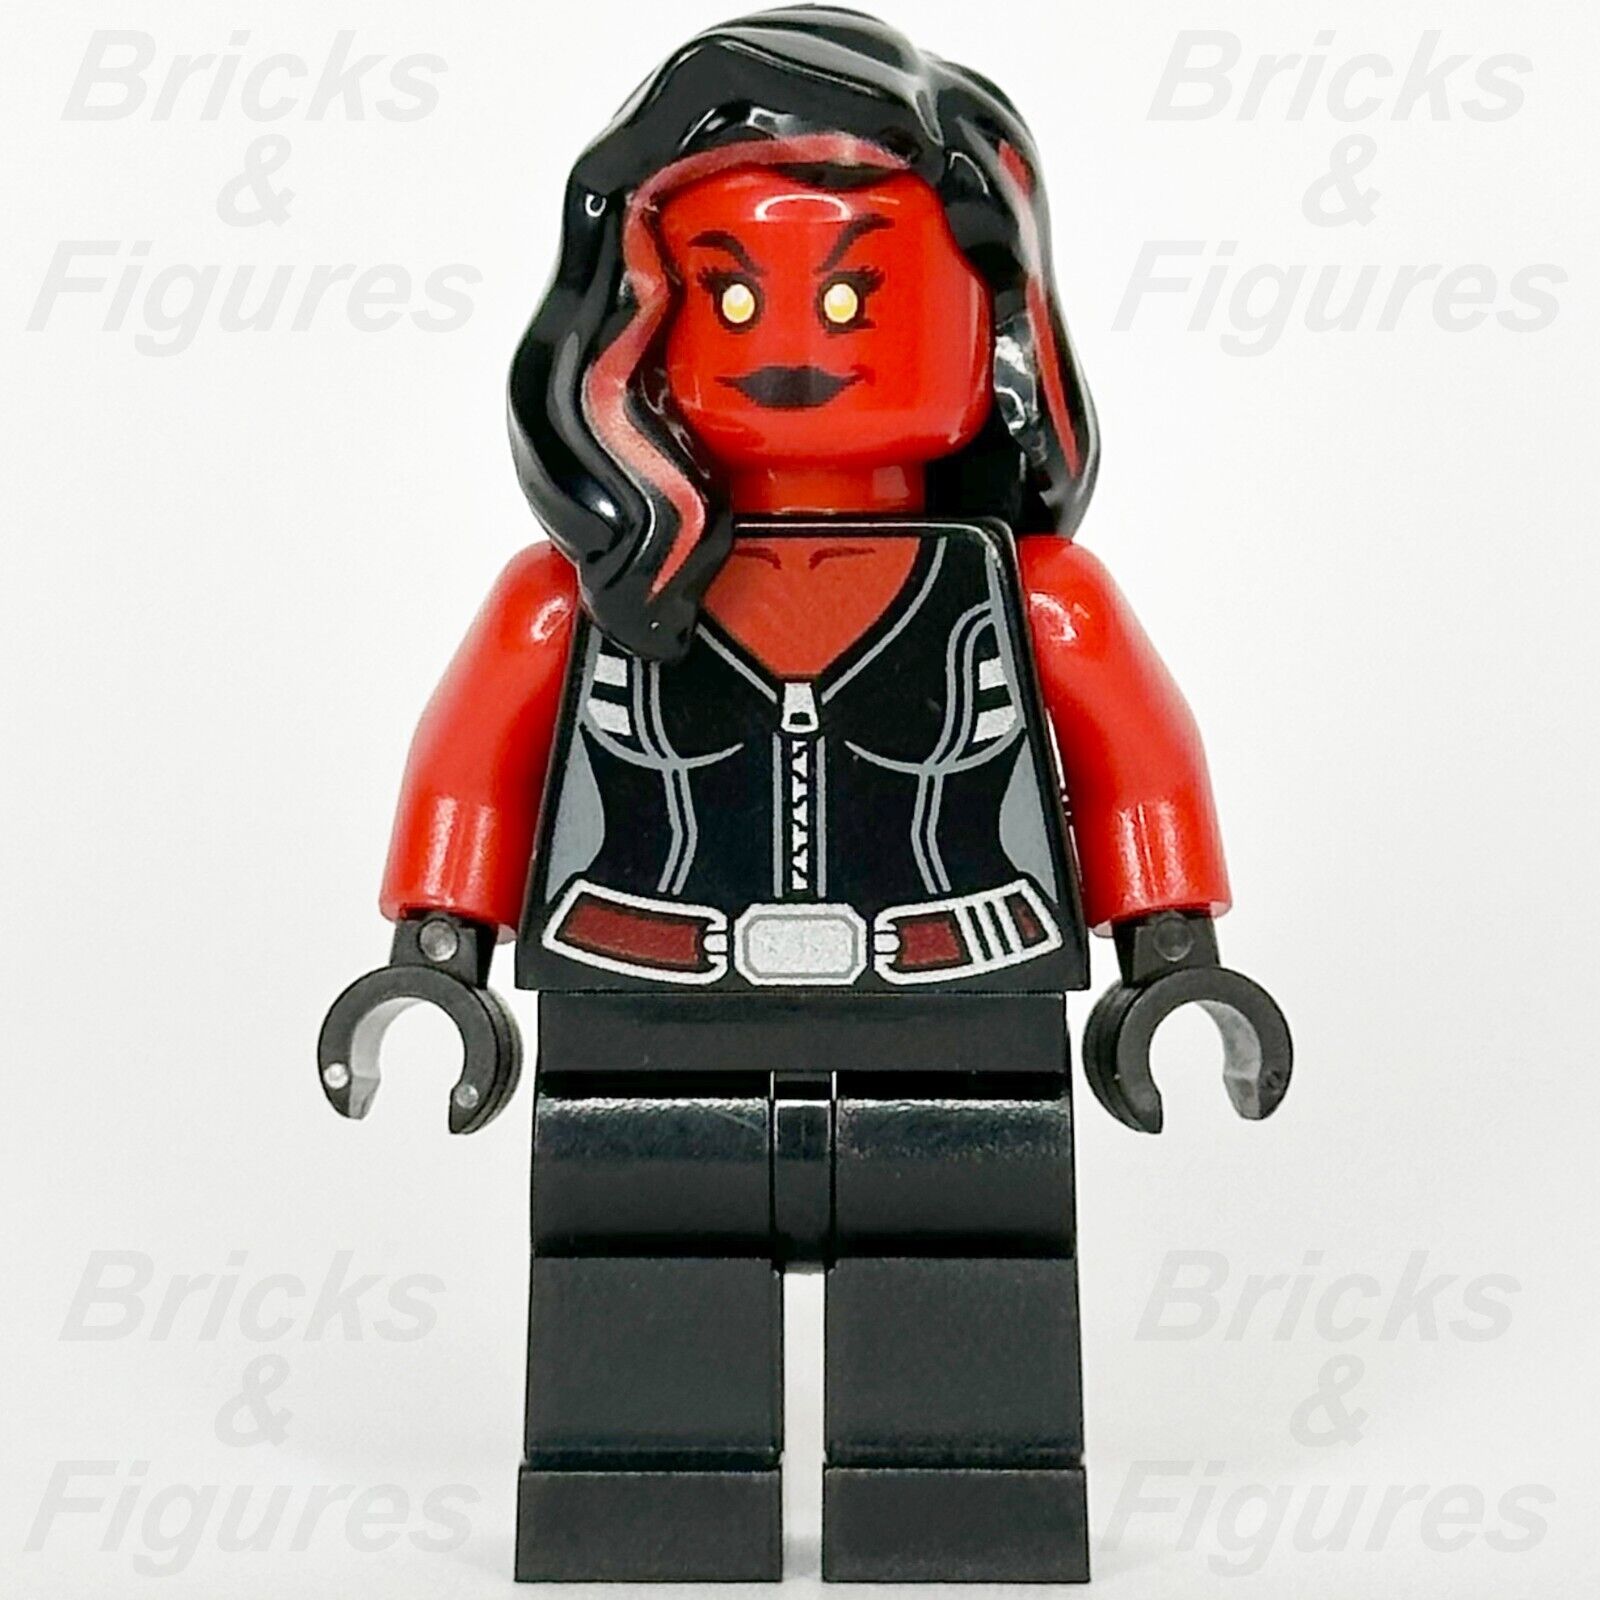 LEGO Super Heroes Red She-Hulk Minifigure Avengers Betty Ross Marvel 76078 sh372